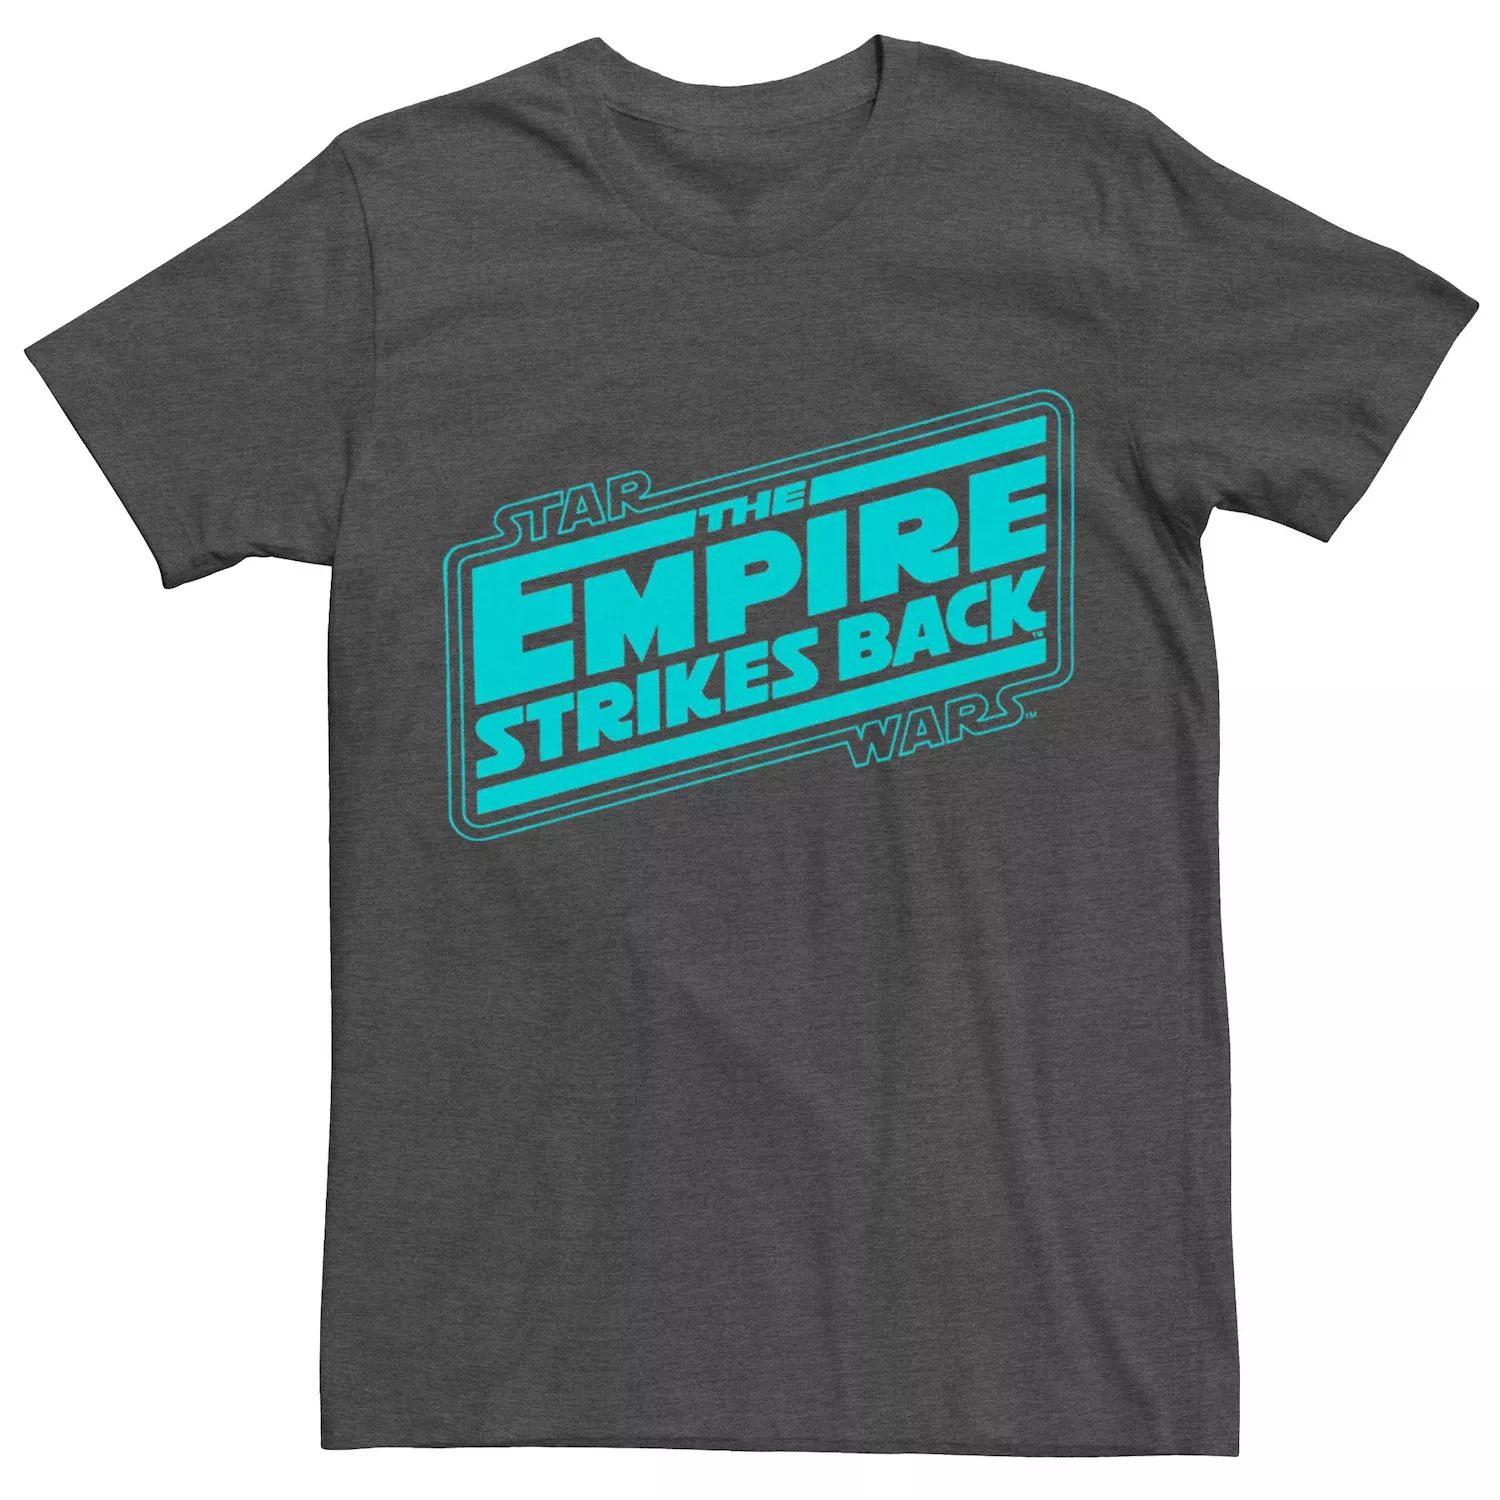 Мужская футболка с логотипом «Империя Звездных войн наносит ответный удар» Licensed Character мужская футболка с плакатом империя звездных войн наносит ответный удар fade in star wars